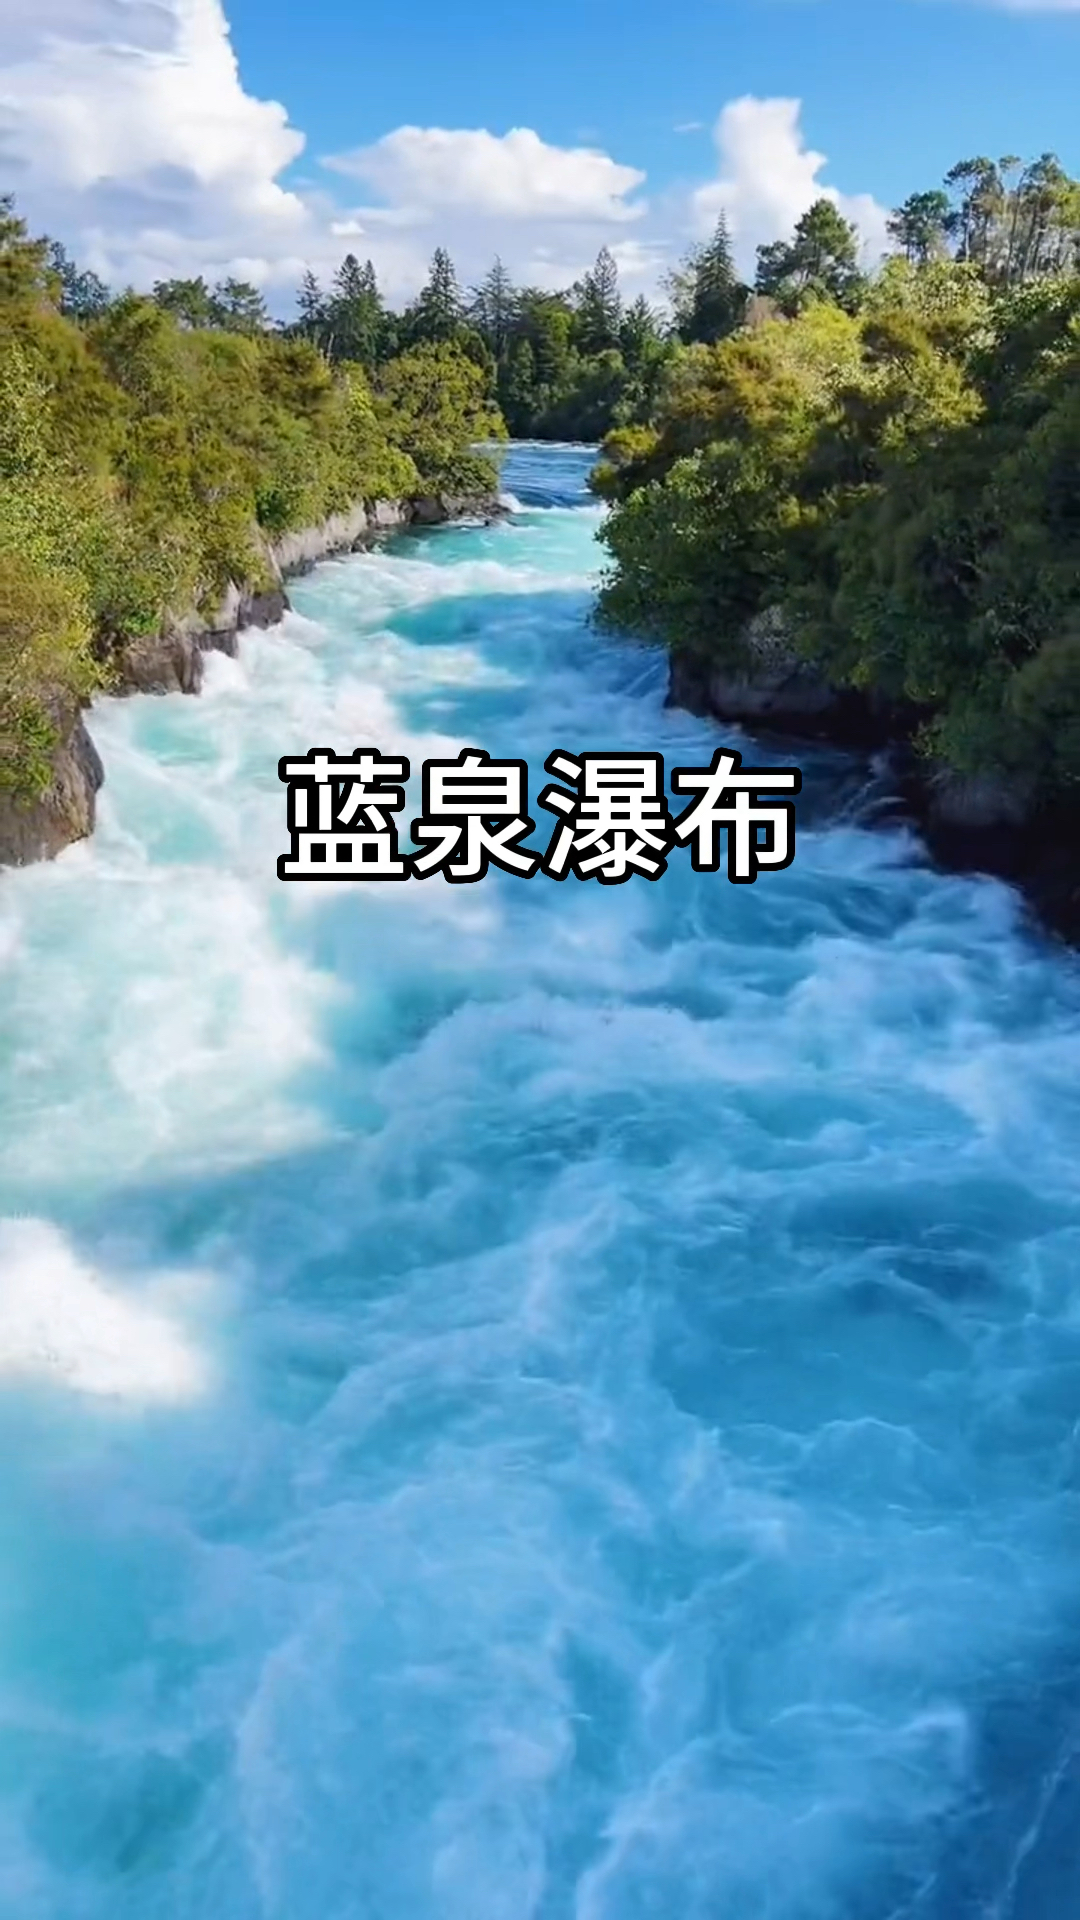 蓝泉瀑布